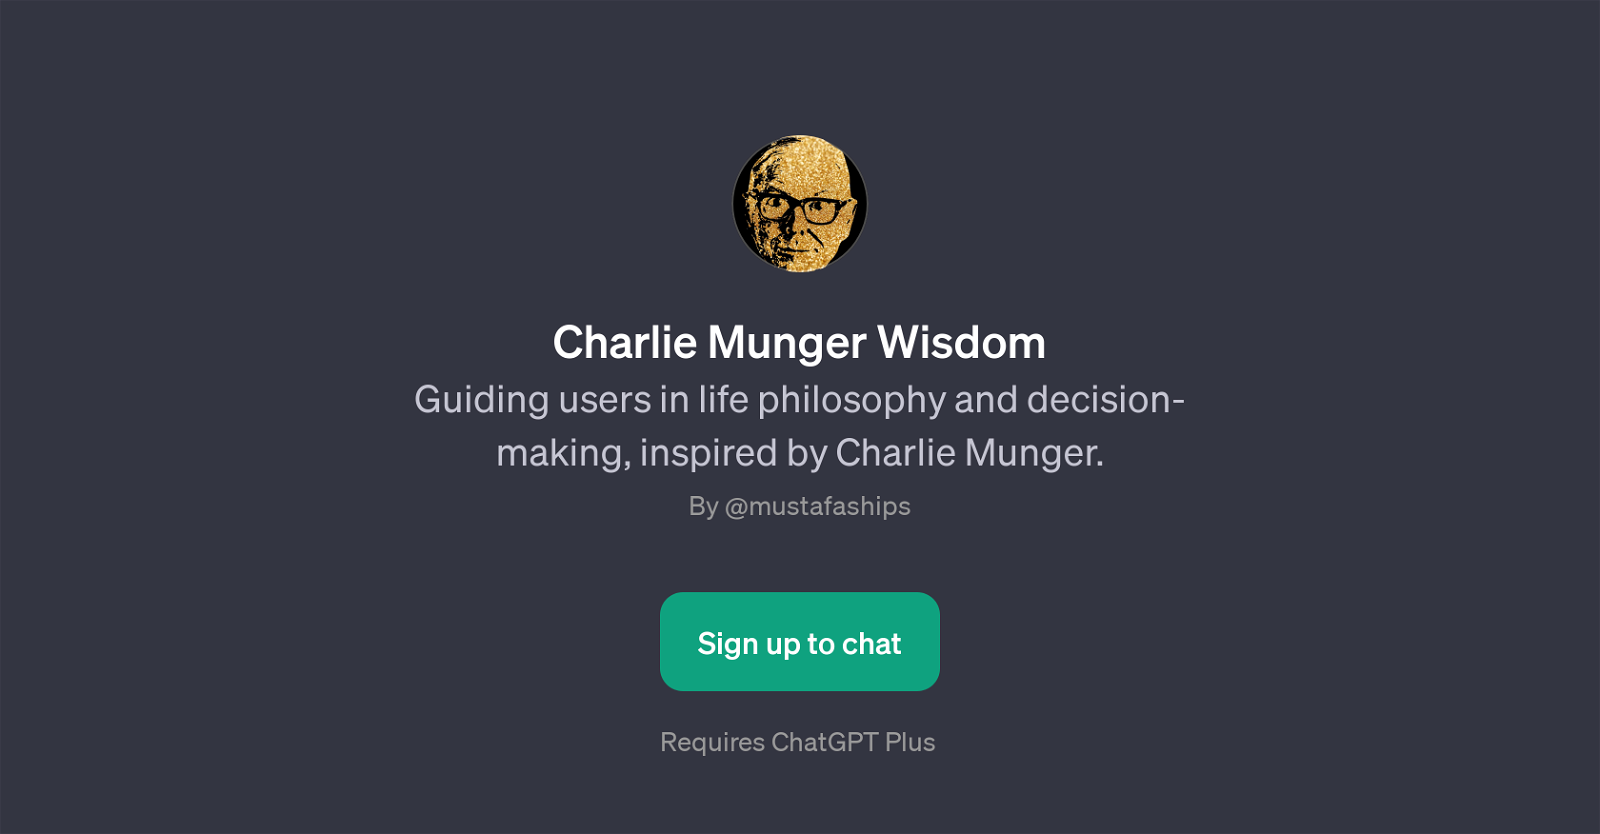 Charlie Munger Wisdom website